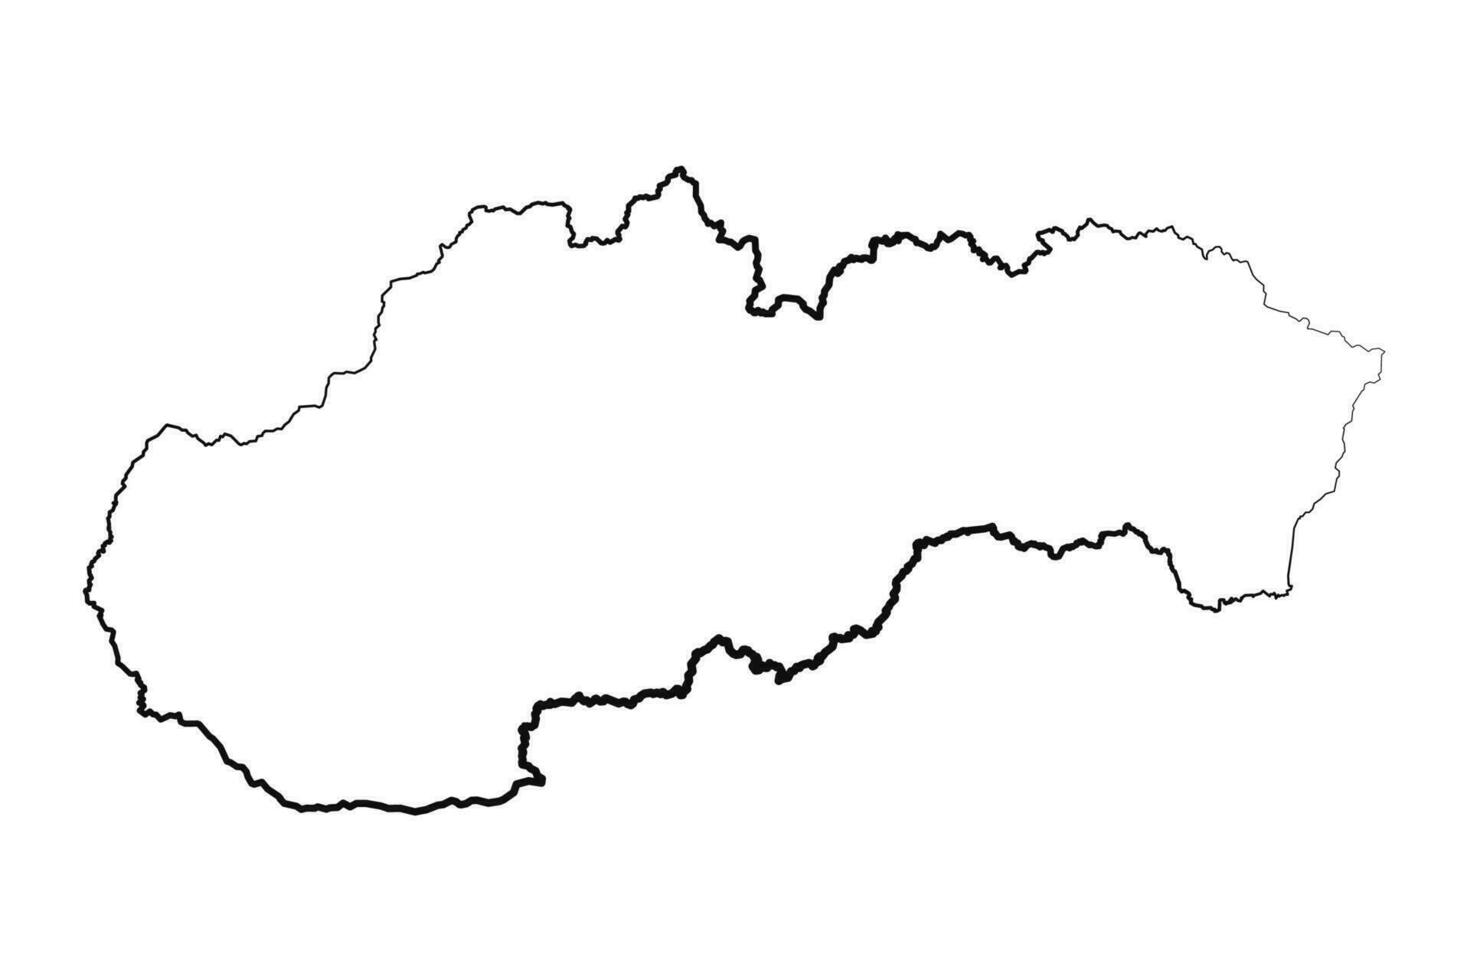 mano disegnato foderato slovacchia semplice carta geografica disegno vettore